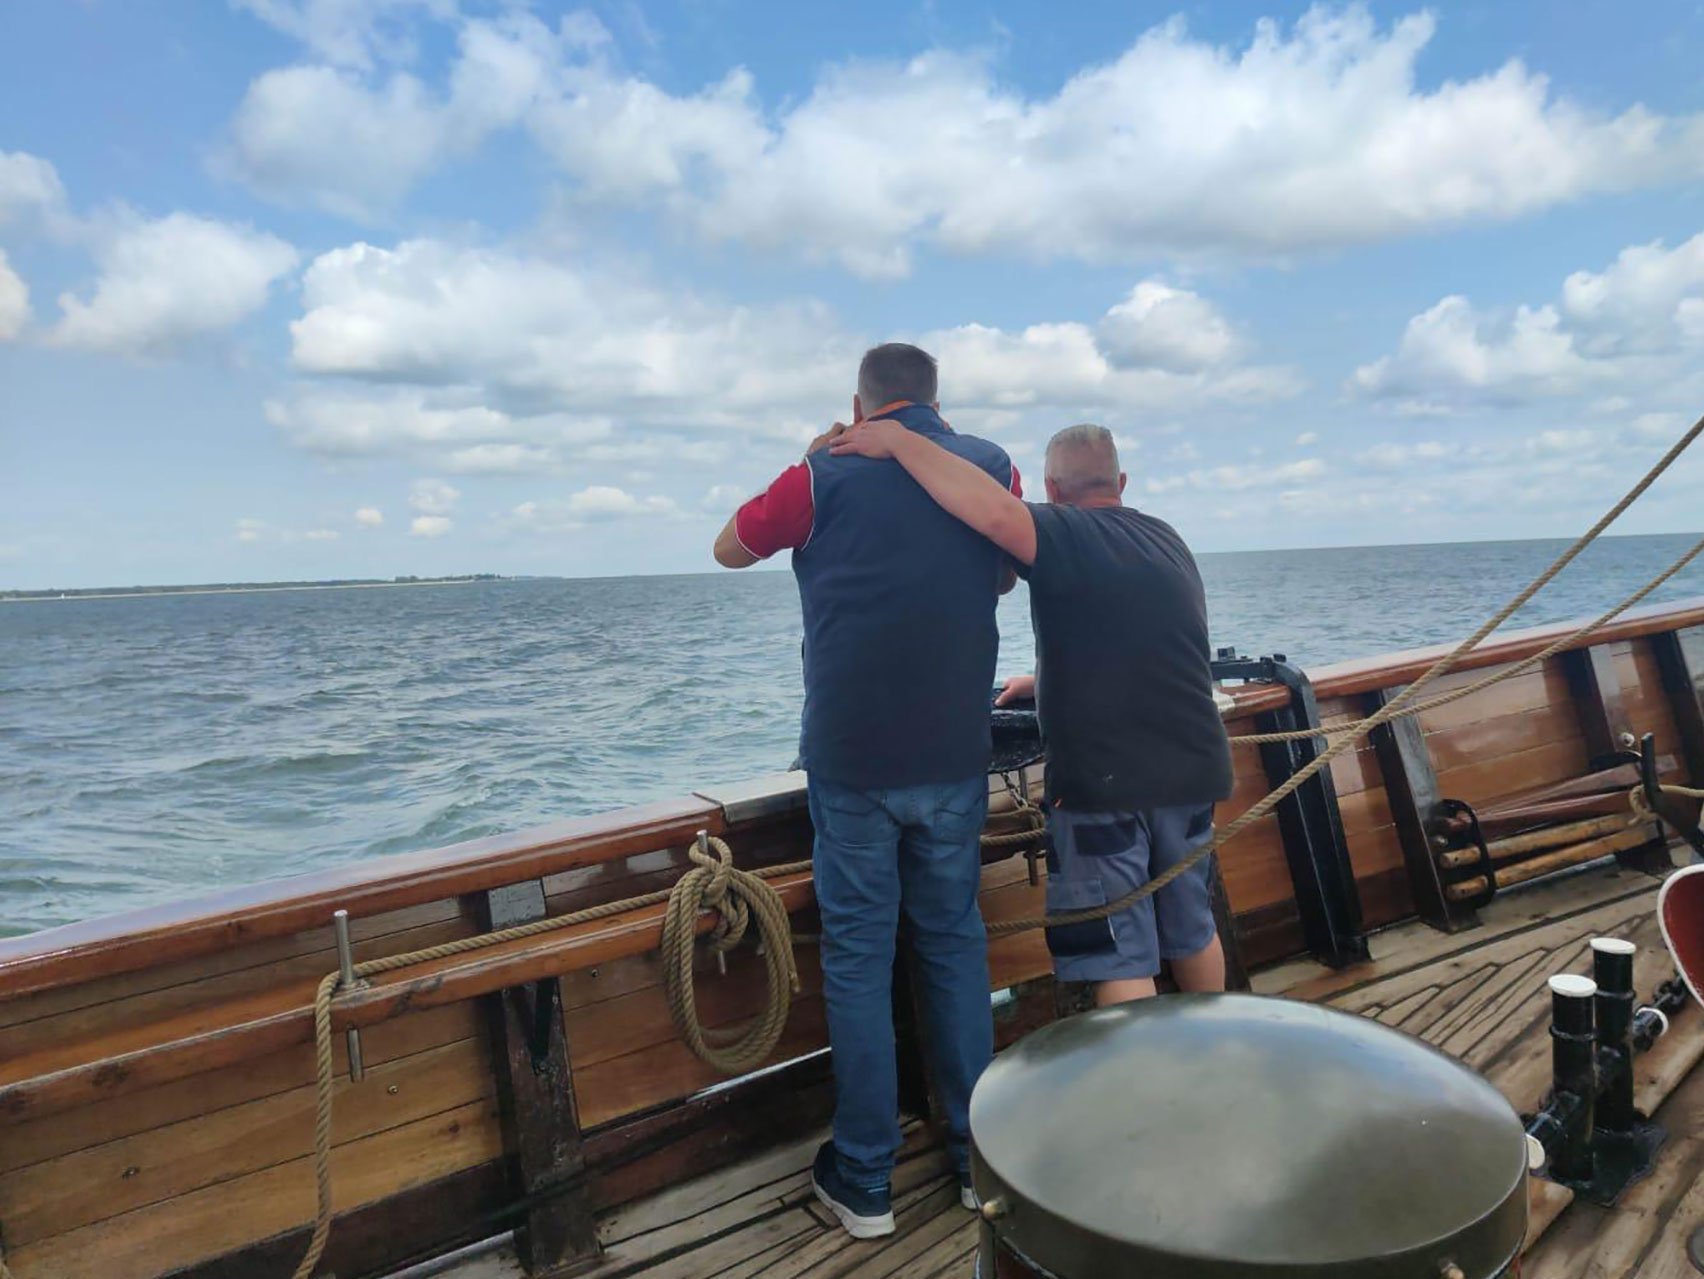 Zwei Männer beim Segeln auf einem großen Segelschiff